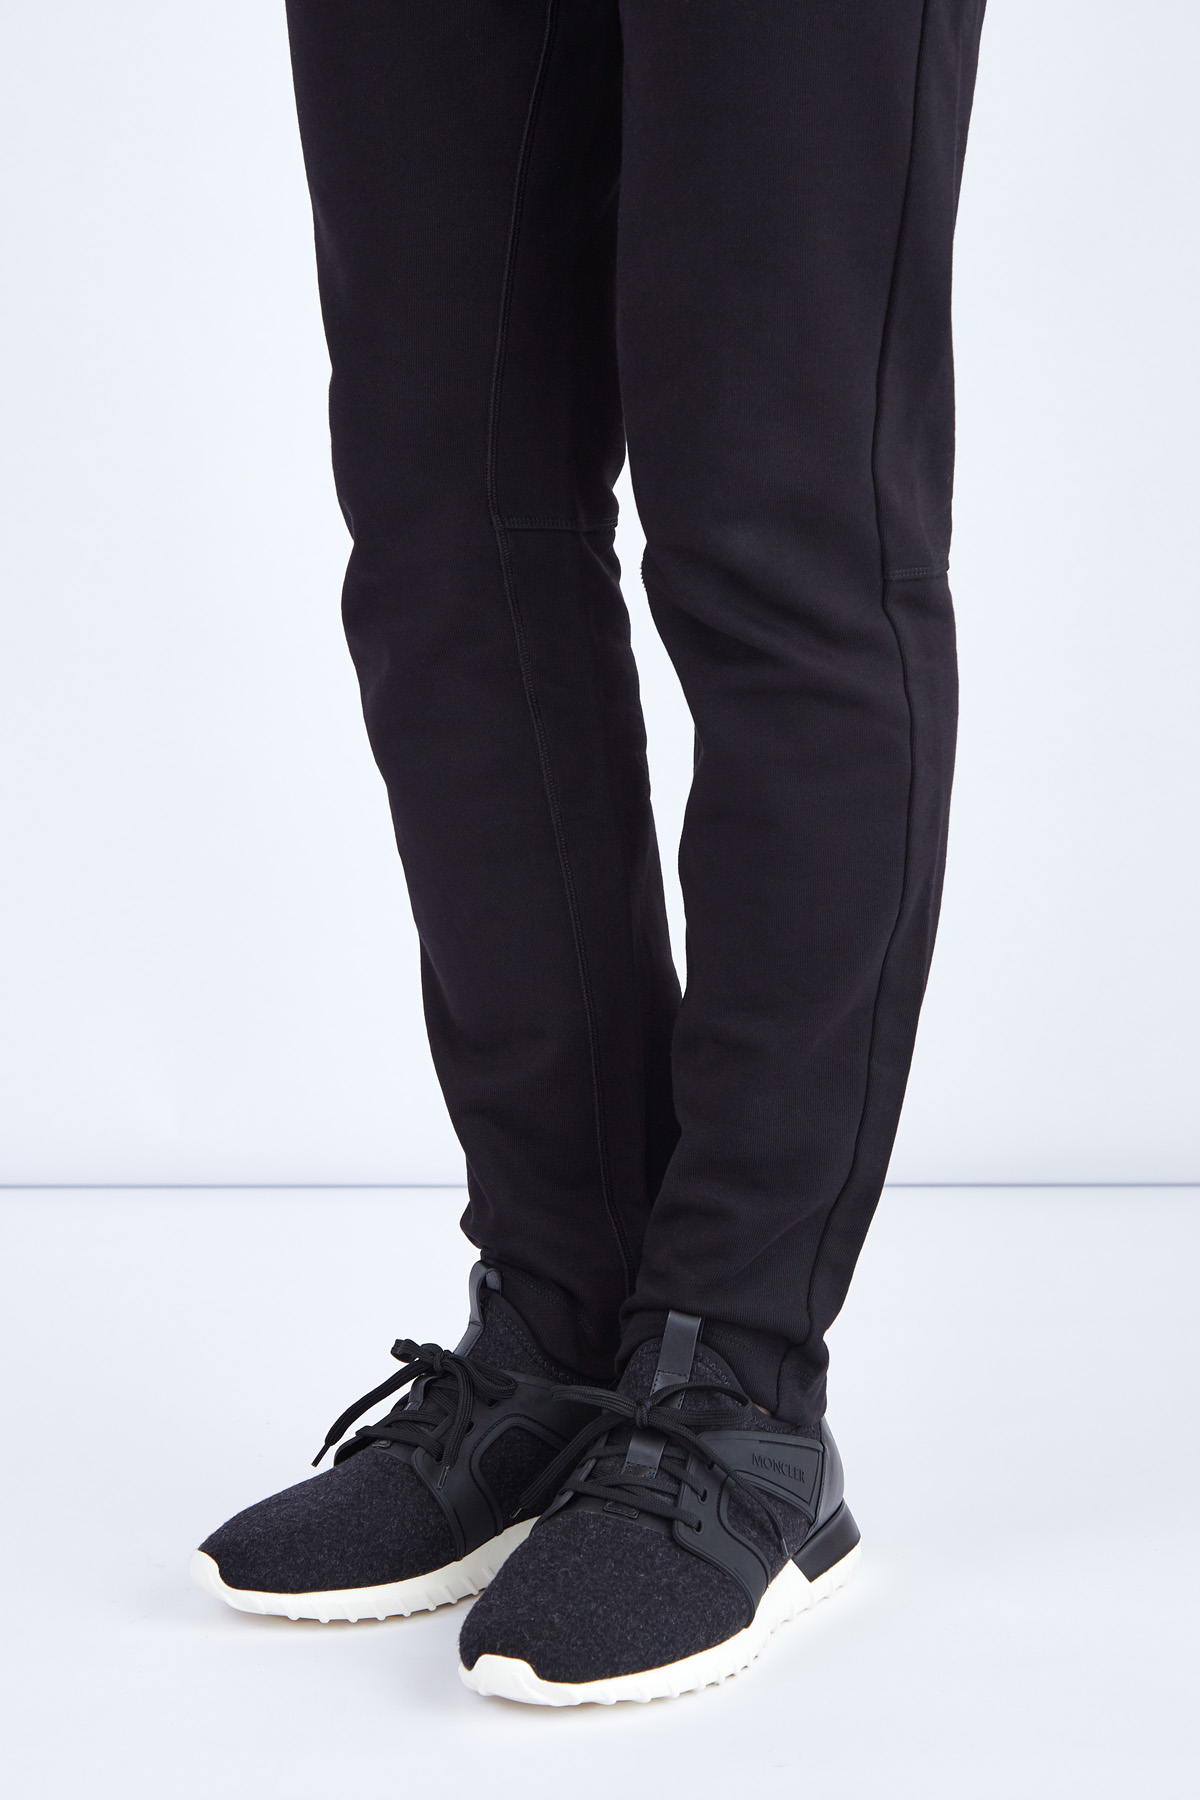 Кроссовки Emilien из шерстяного войлока с отделкой из кожи MONCLER, цвет черно-белый, размер 39;40 - фото 2